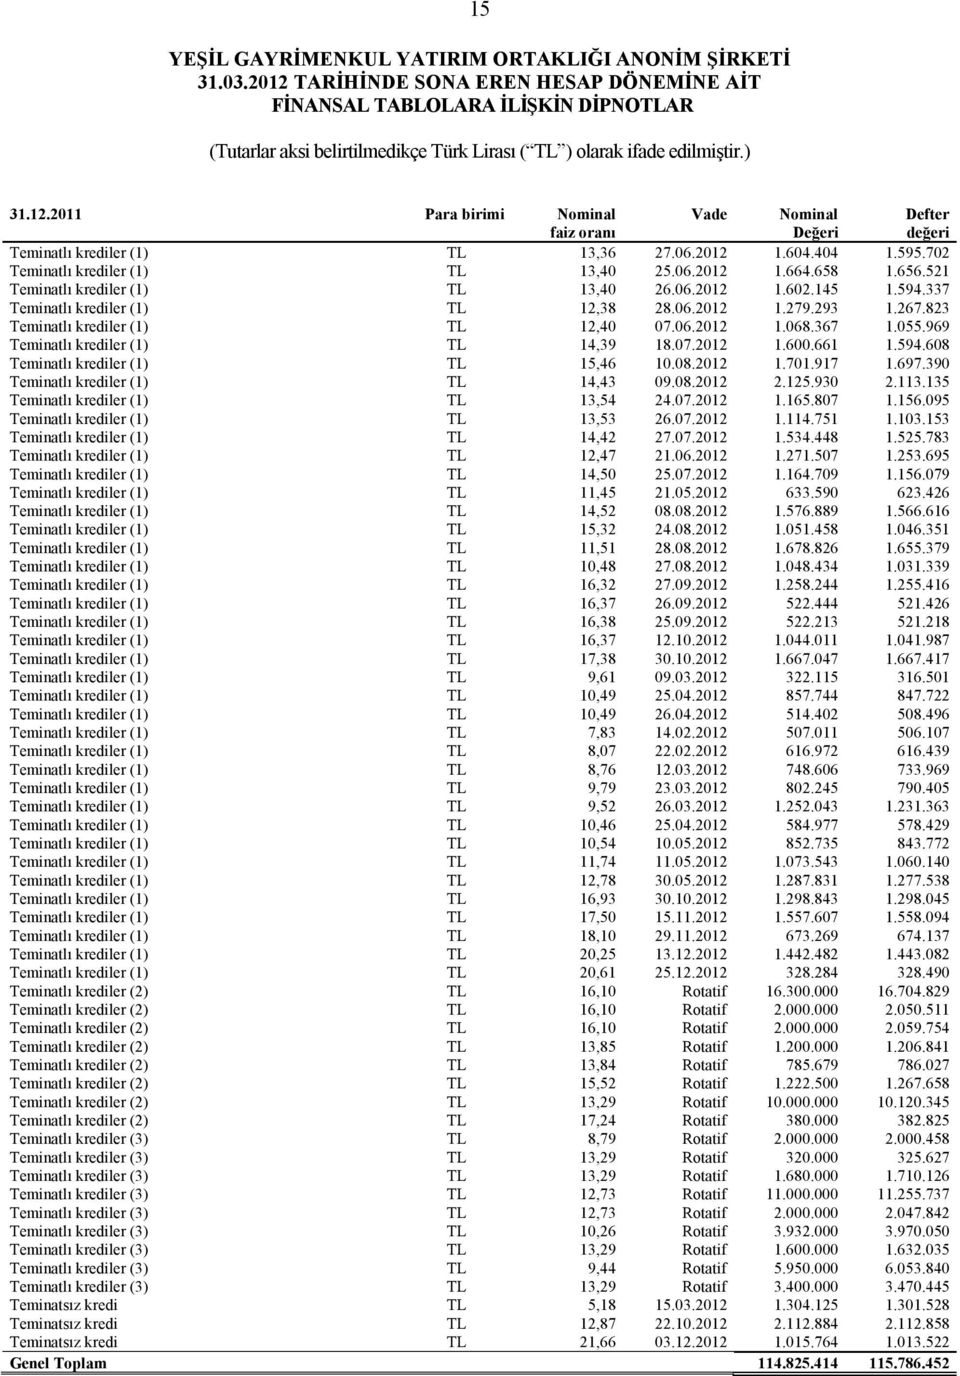 969 Teminatlı krediler (1) TL 14,39 18.07.2012 1.600.661 1.594.608 Teminatlı krediler (1) TL 15,46 10.08.2012 1.701.917 1.697.390 Teminatlı krediler (1) TL 14,43 09.08.2012 2.125.930 2.113.